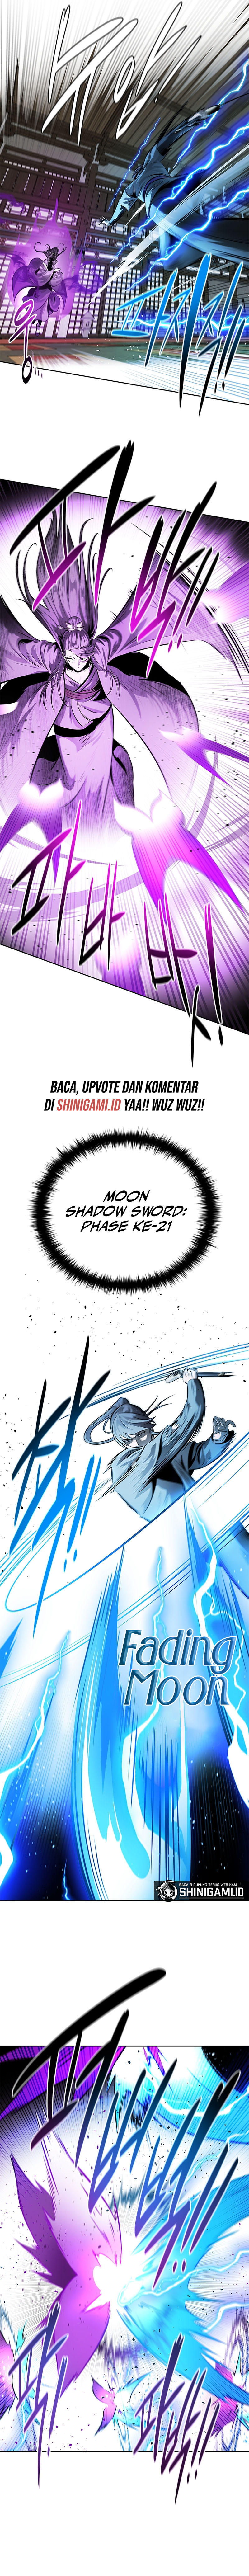 moon-shadow-sword-emperor Chapter 29